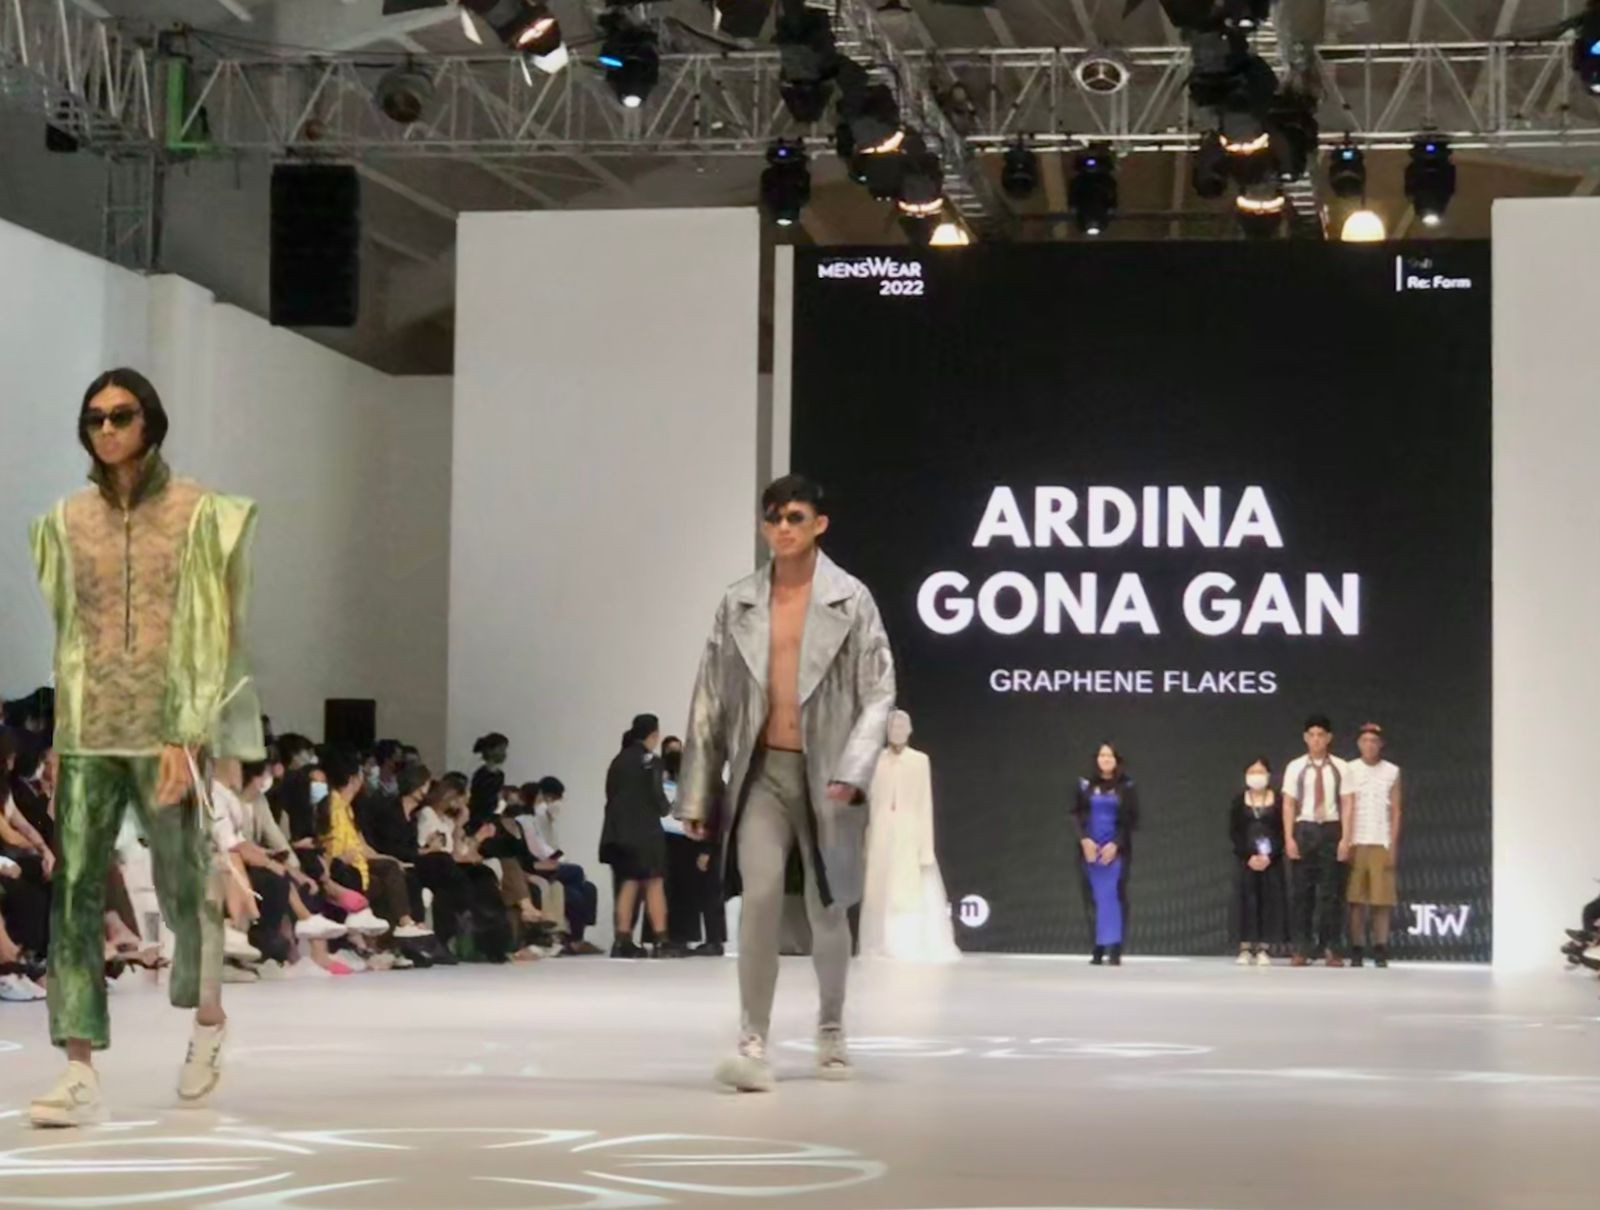 Ardina Gona Keluar Sebagai Pemenang Di Lomba Perancang Mode Menswear 2022